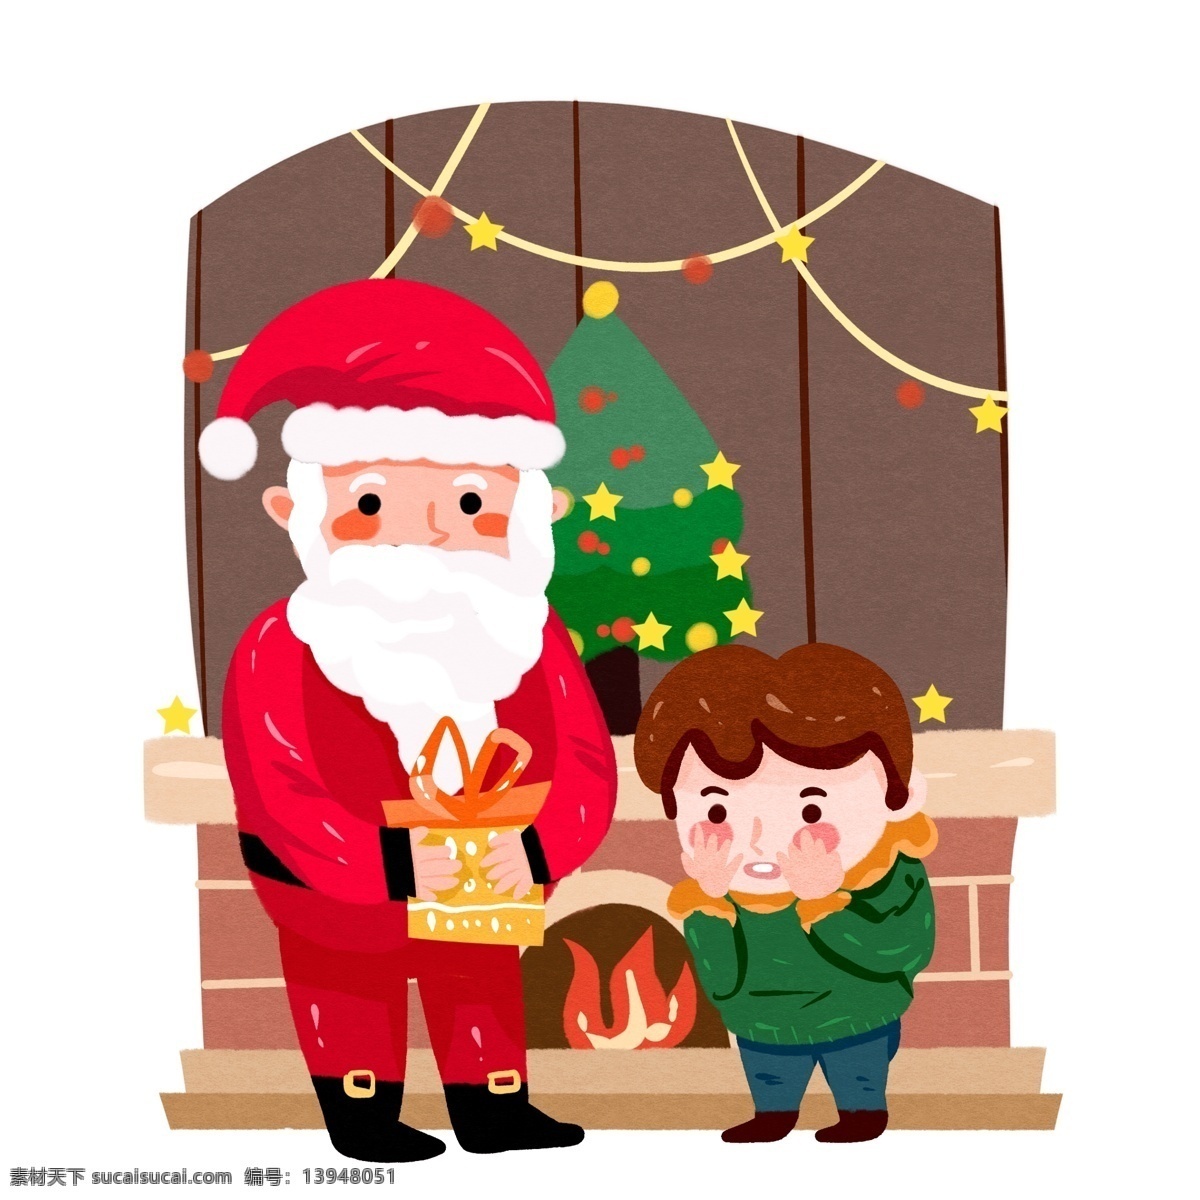 圣诞 场景 圣诞老人 送礼 物 小 男孩 壁炉 圣诞场景 礼物 室内 壁橱